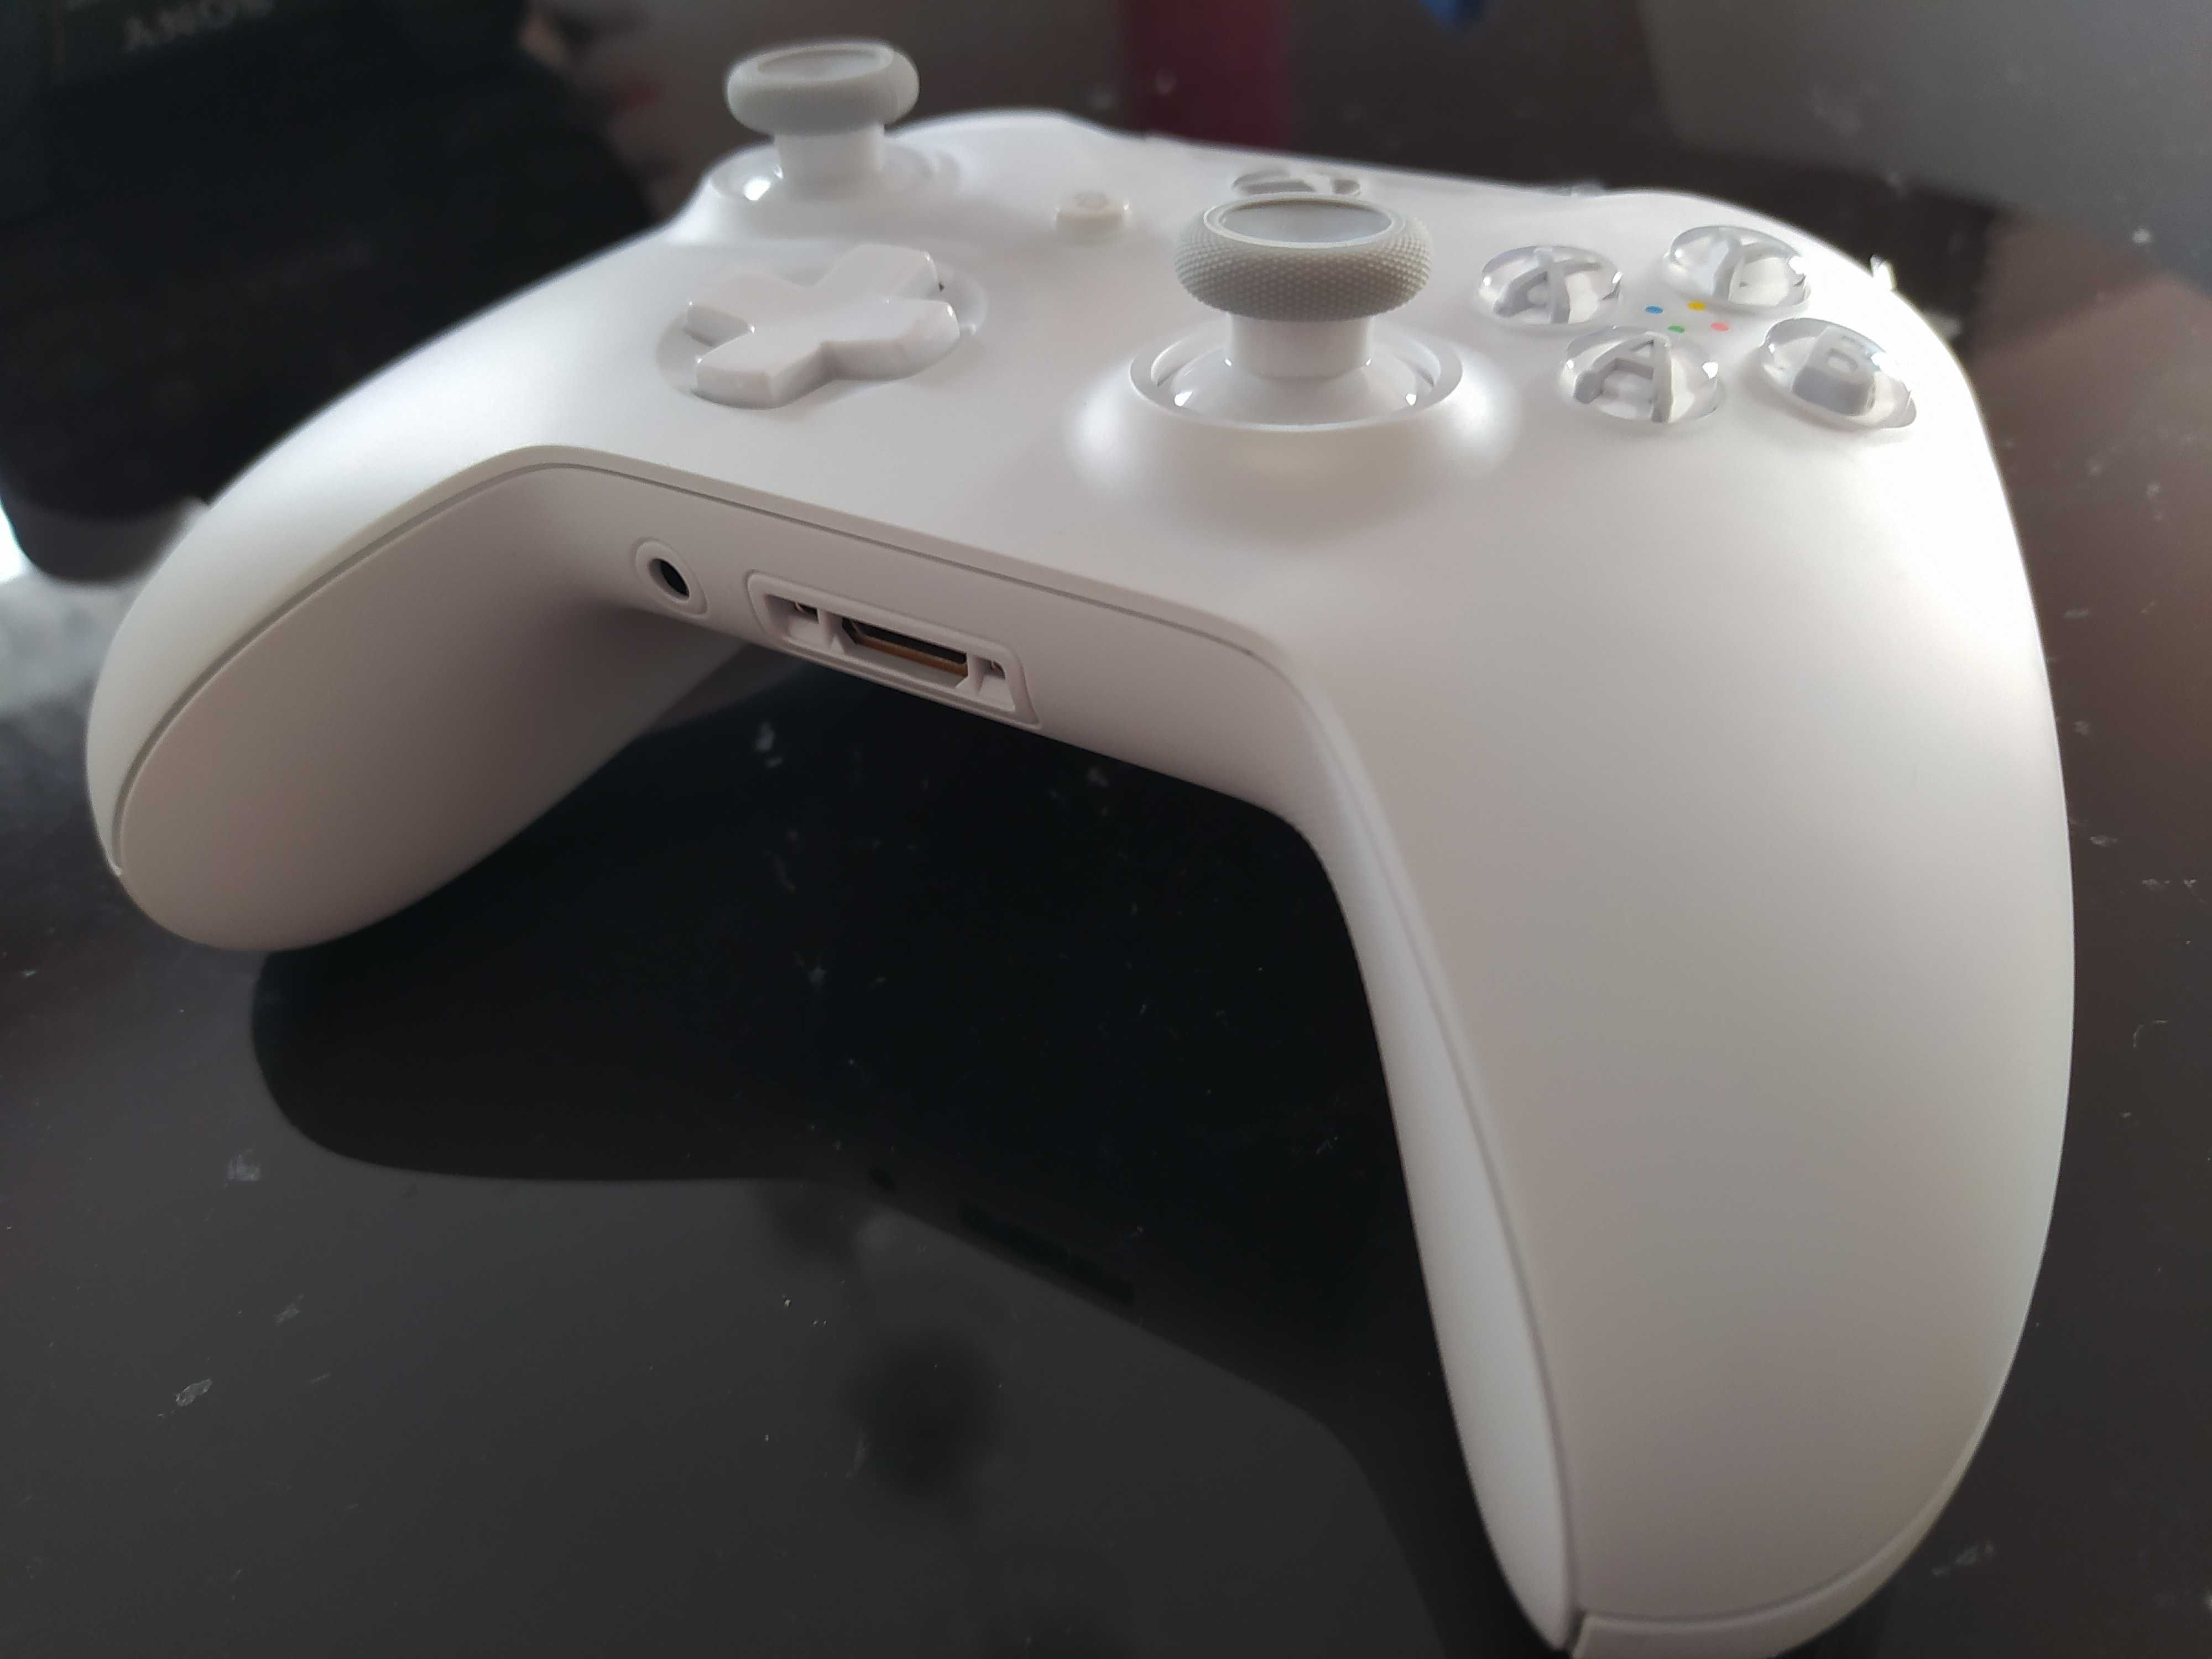 Pad od Xbox One X S Phantom White w pełni sprawny oryginał Nowy